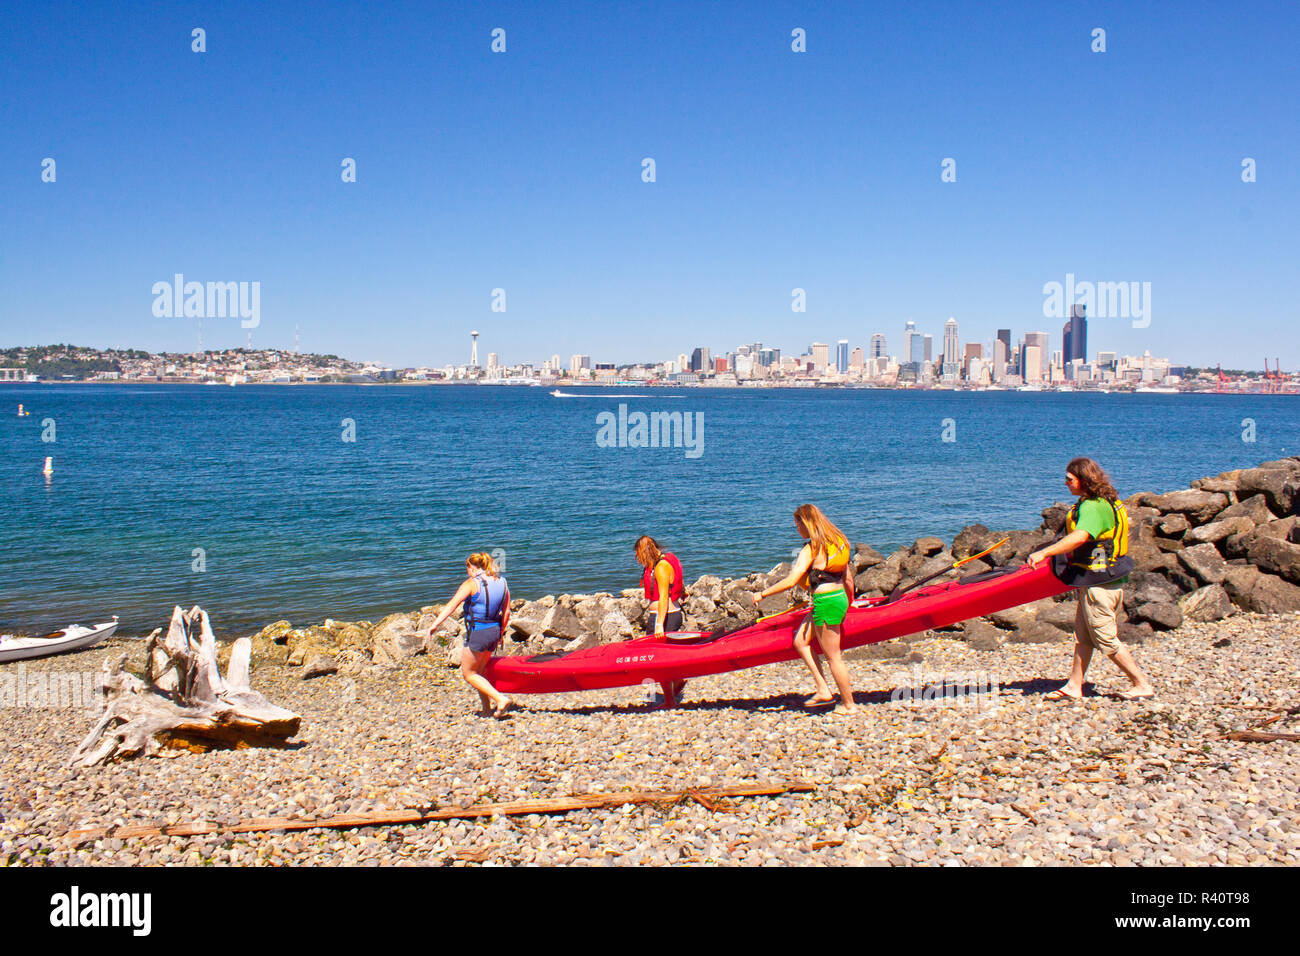 USA, l'État de Washington, Seattle. Les gens portent un kayak de mer pour deux personnes sur une plage de West Seattle, dans le Puget Sound du centre-ville de Seattle. Banque D'Images